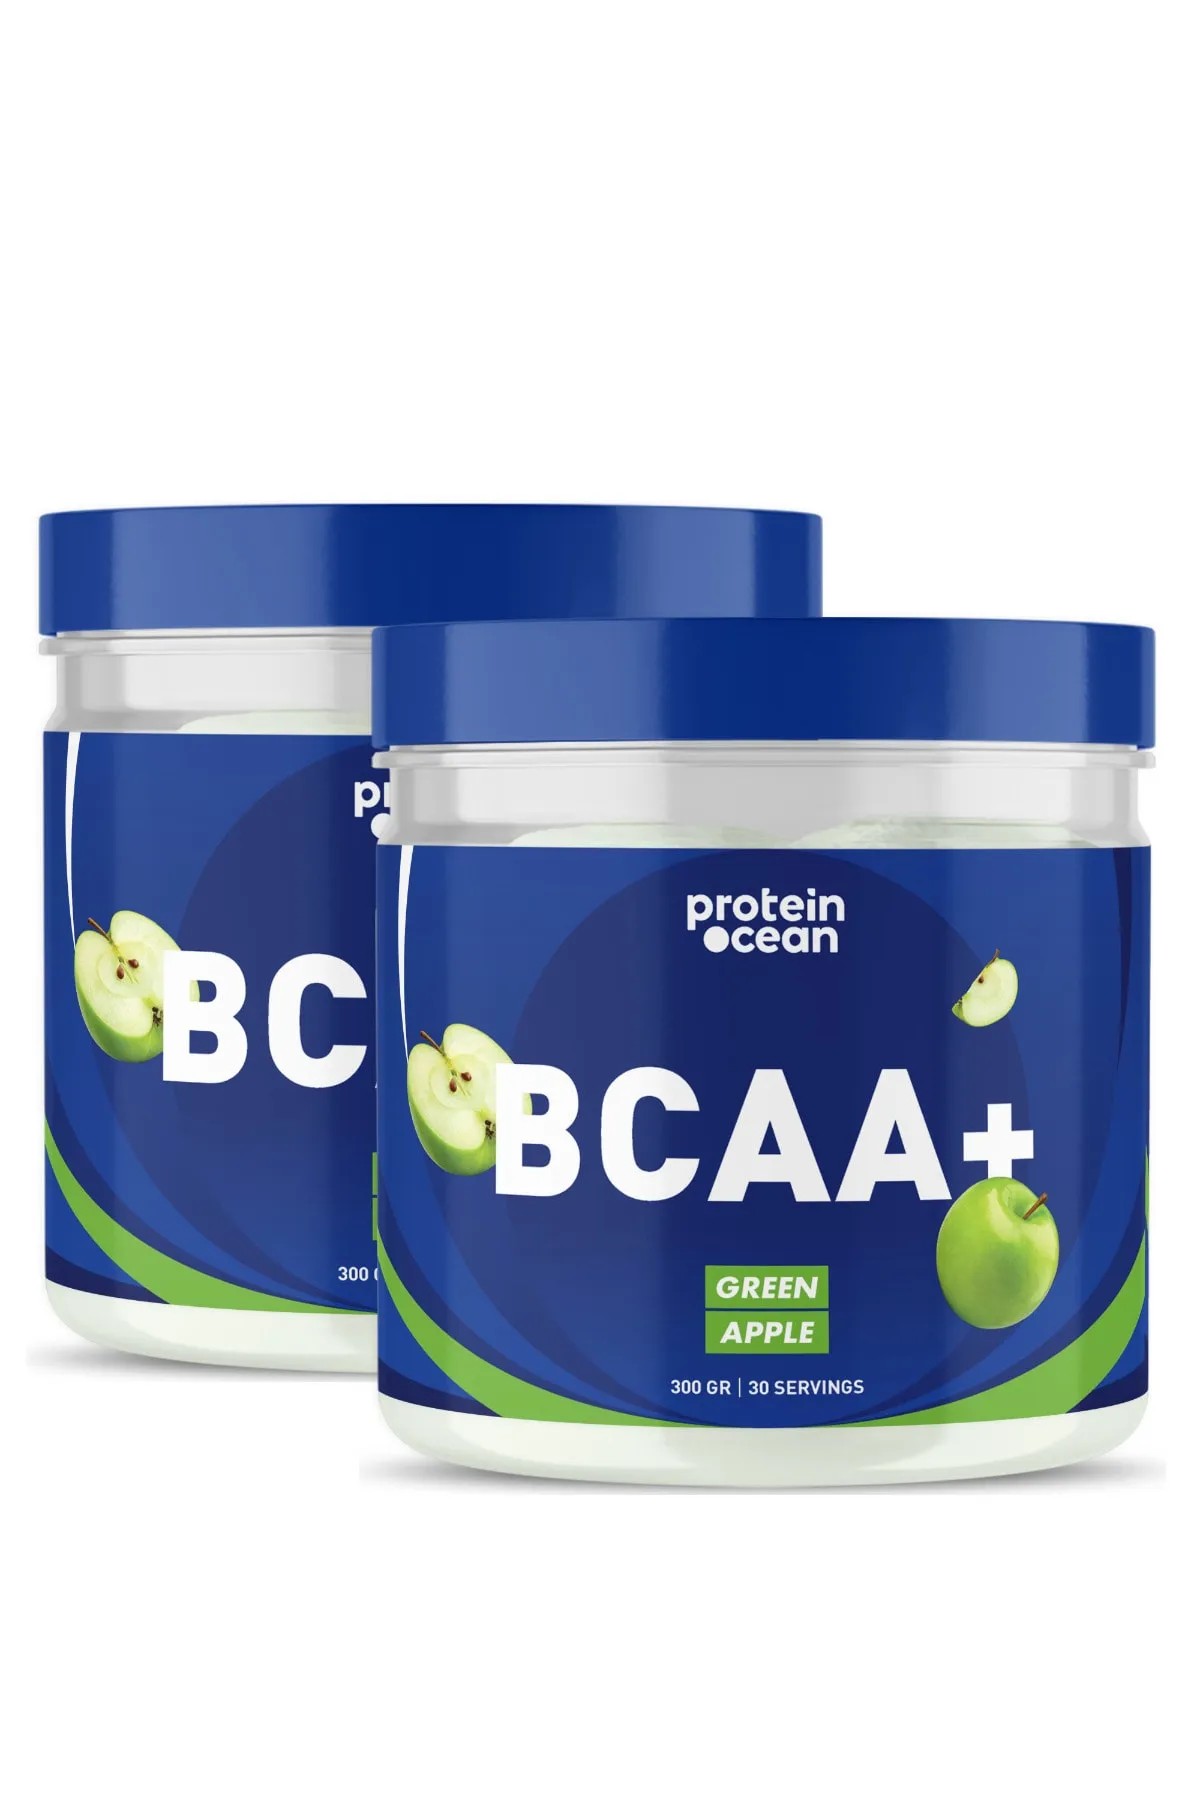 ProteinOcean Bcaa+ - 300 GRAM